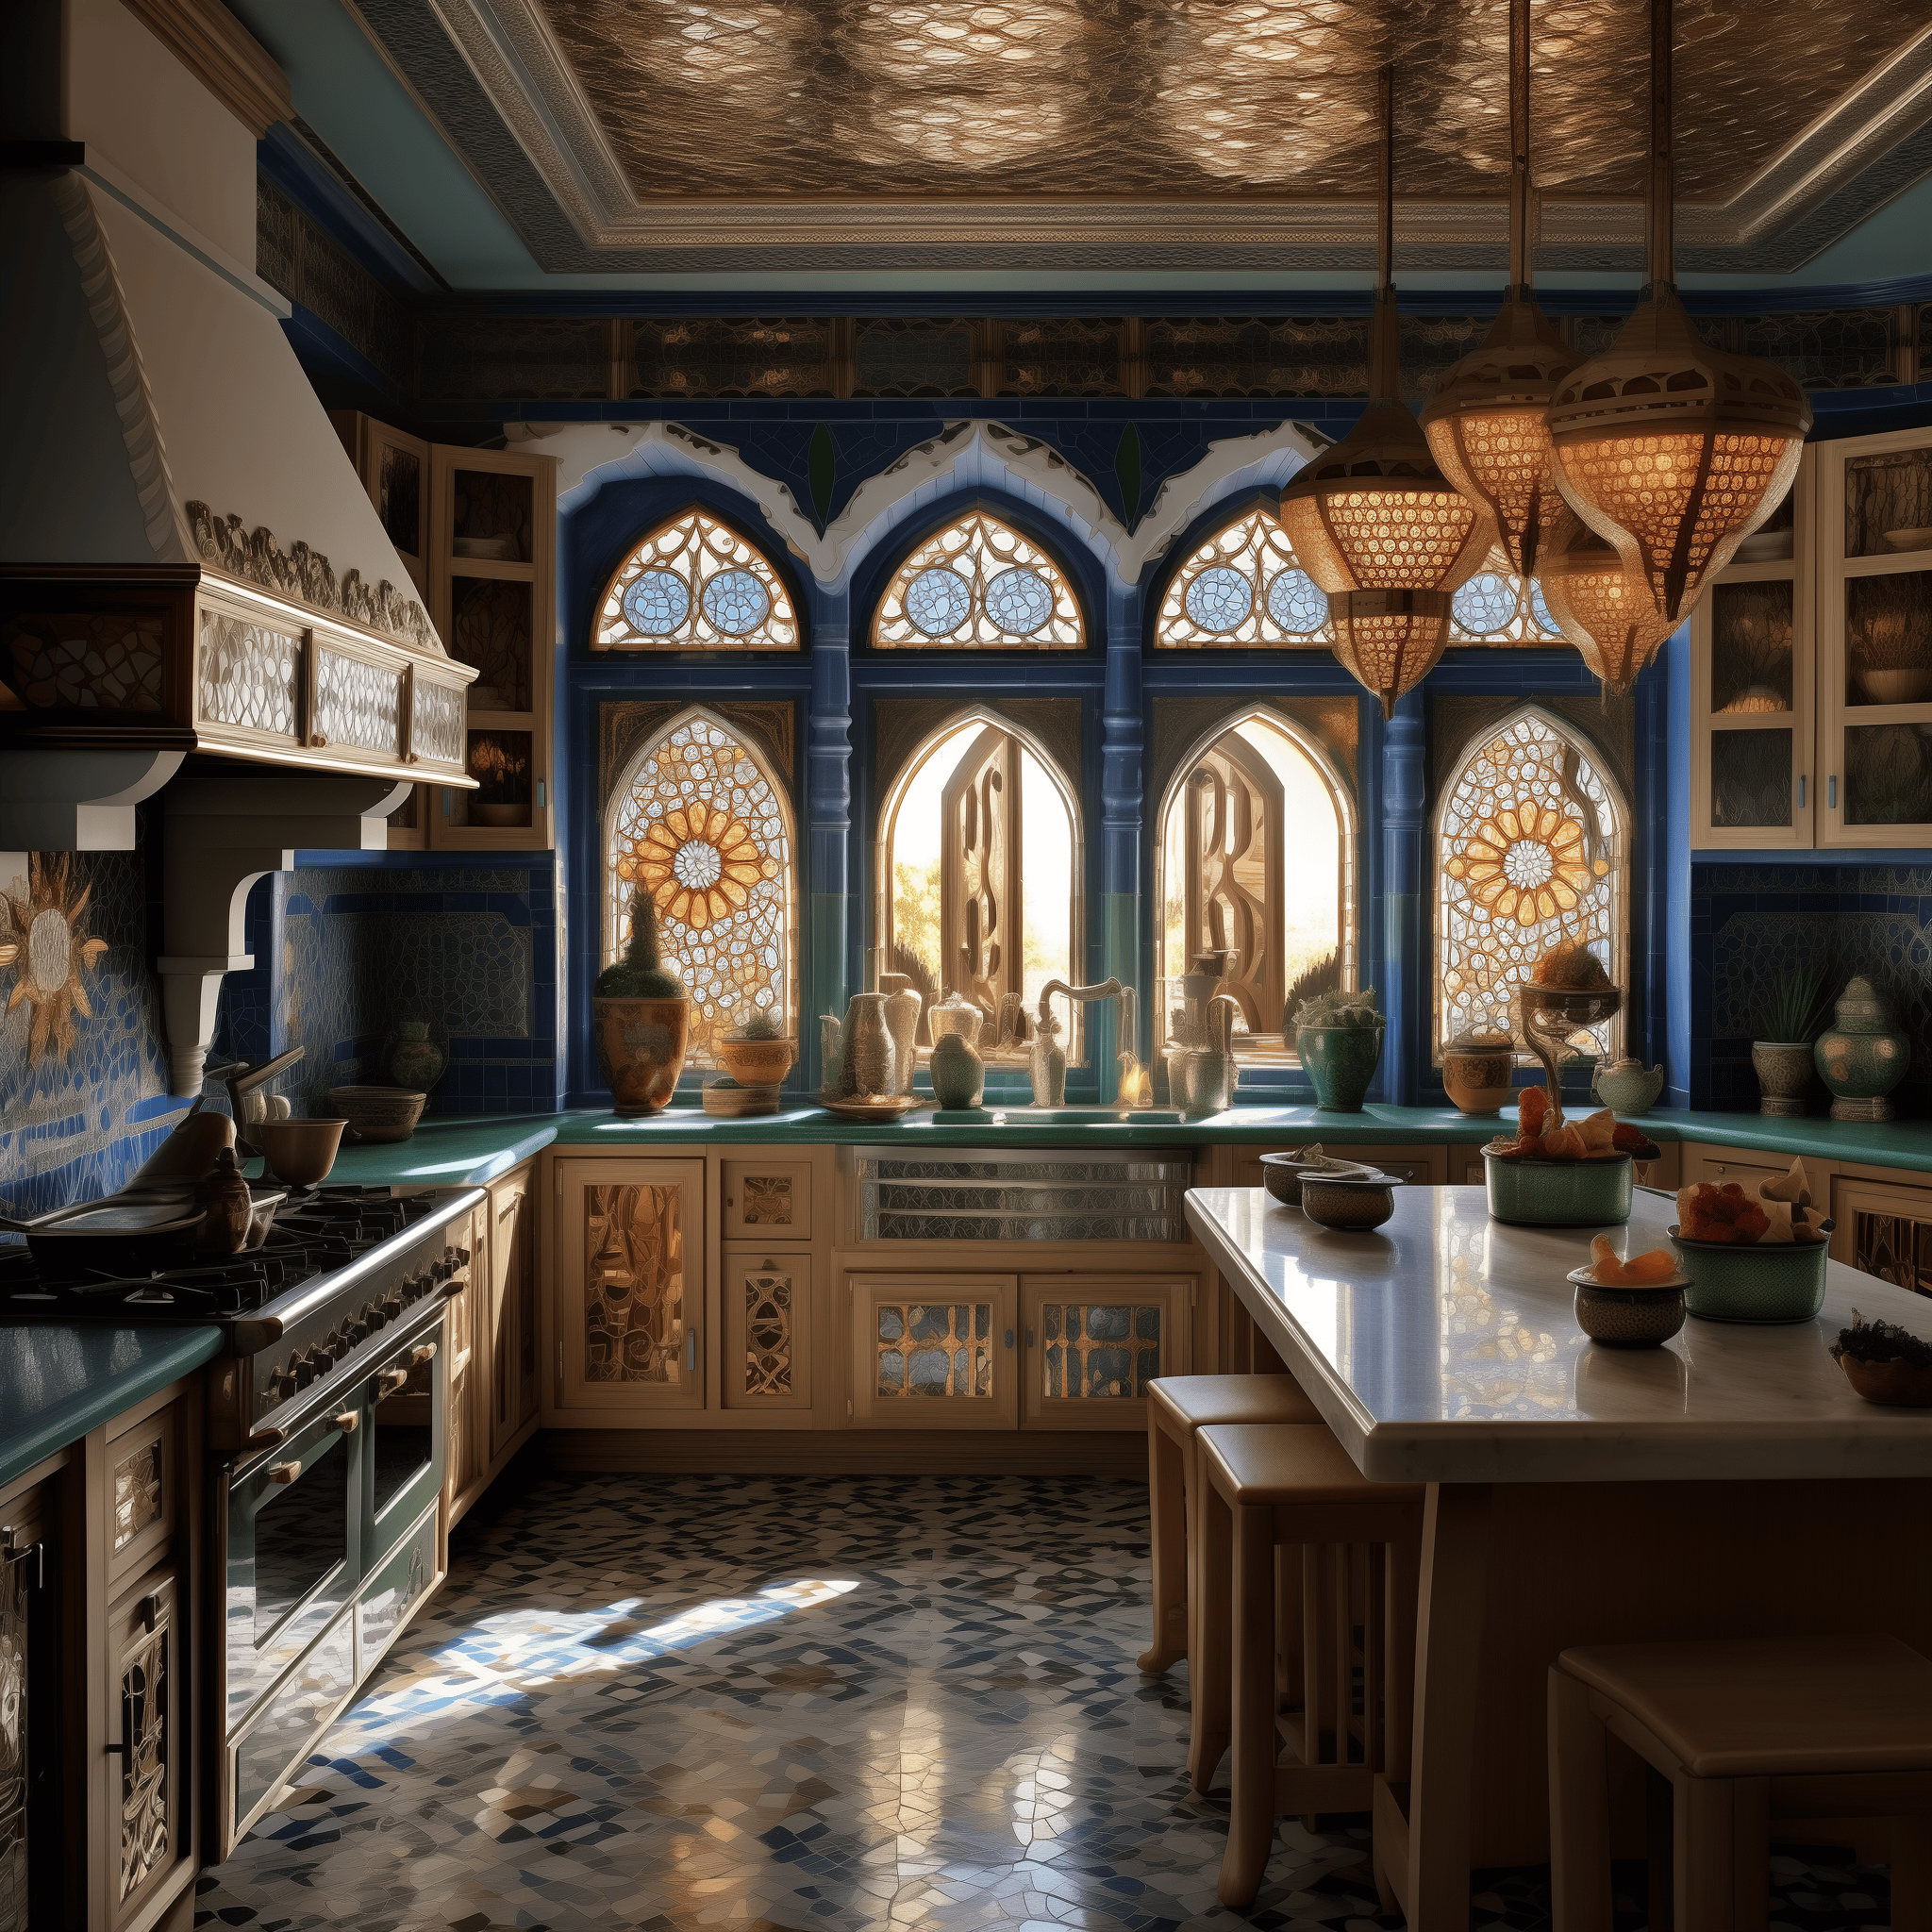 moroccan kitchen decor ideas modern interior design style theme architecture